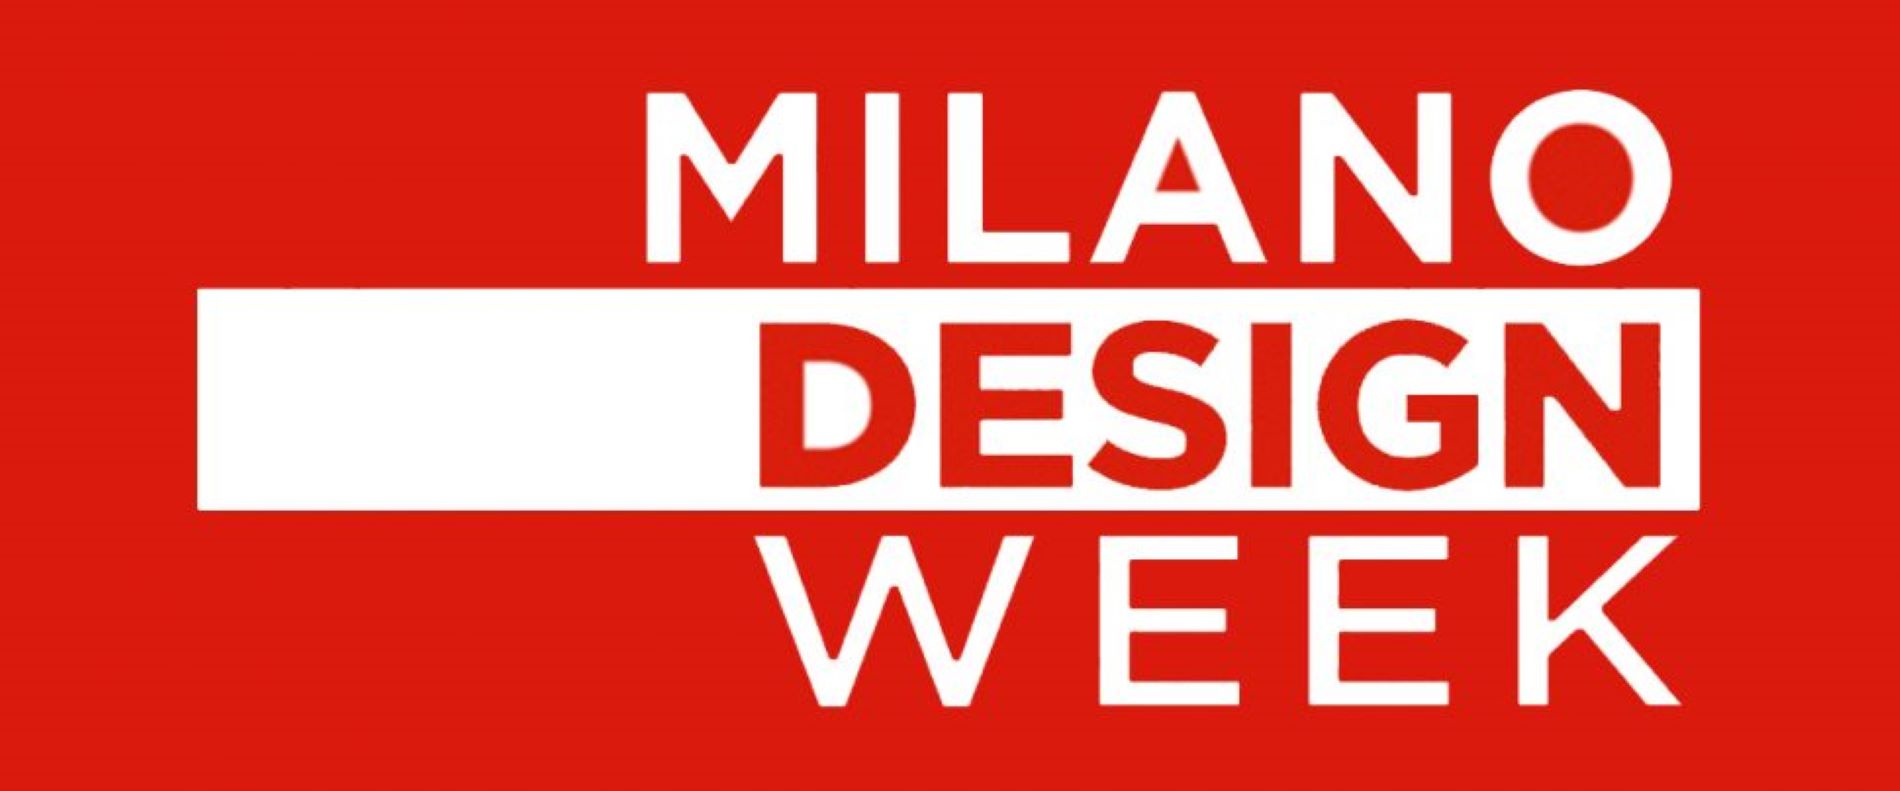 Milano - logo evento